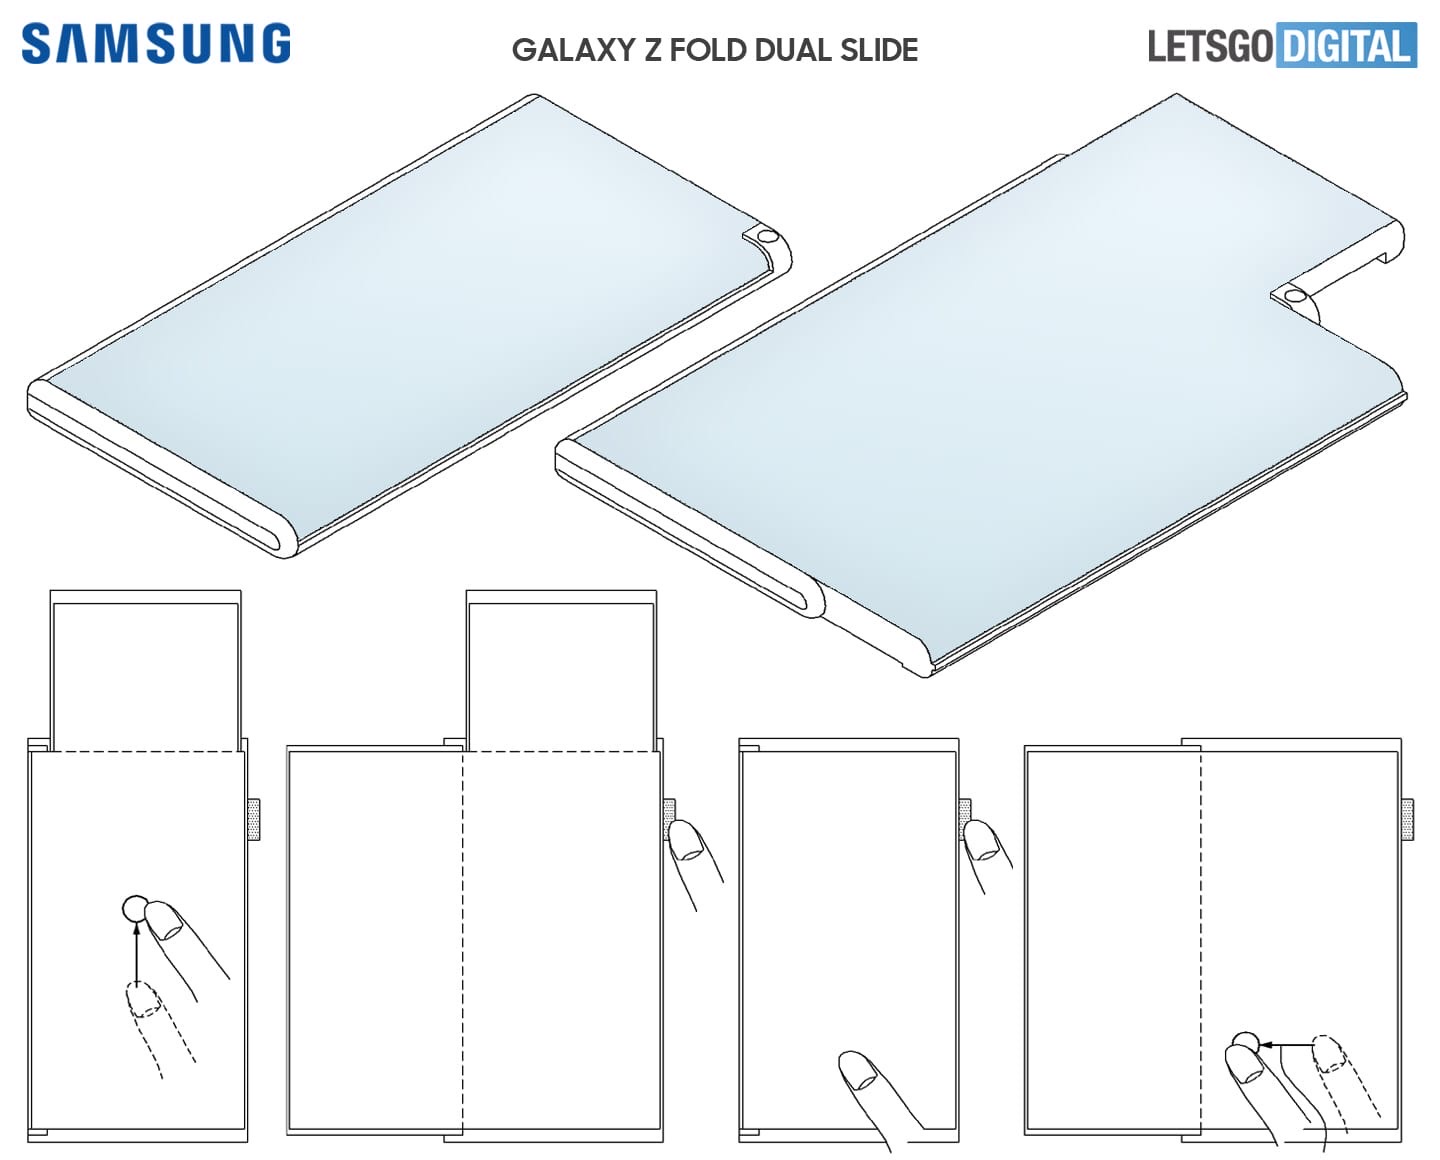 Samsung зарегистрировала патент на устройство способное растягиваться одновременно сразу в двух перпендикулярных друг к другу направлениях.